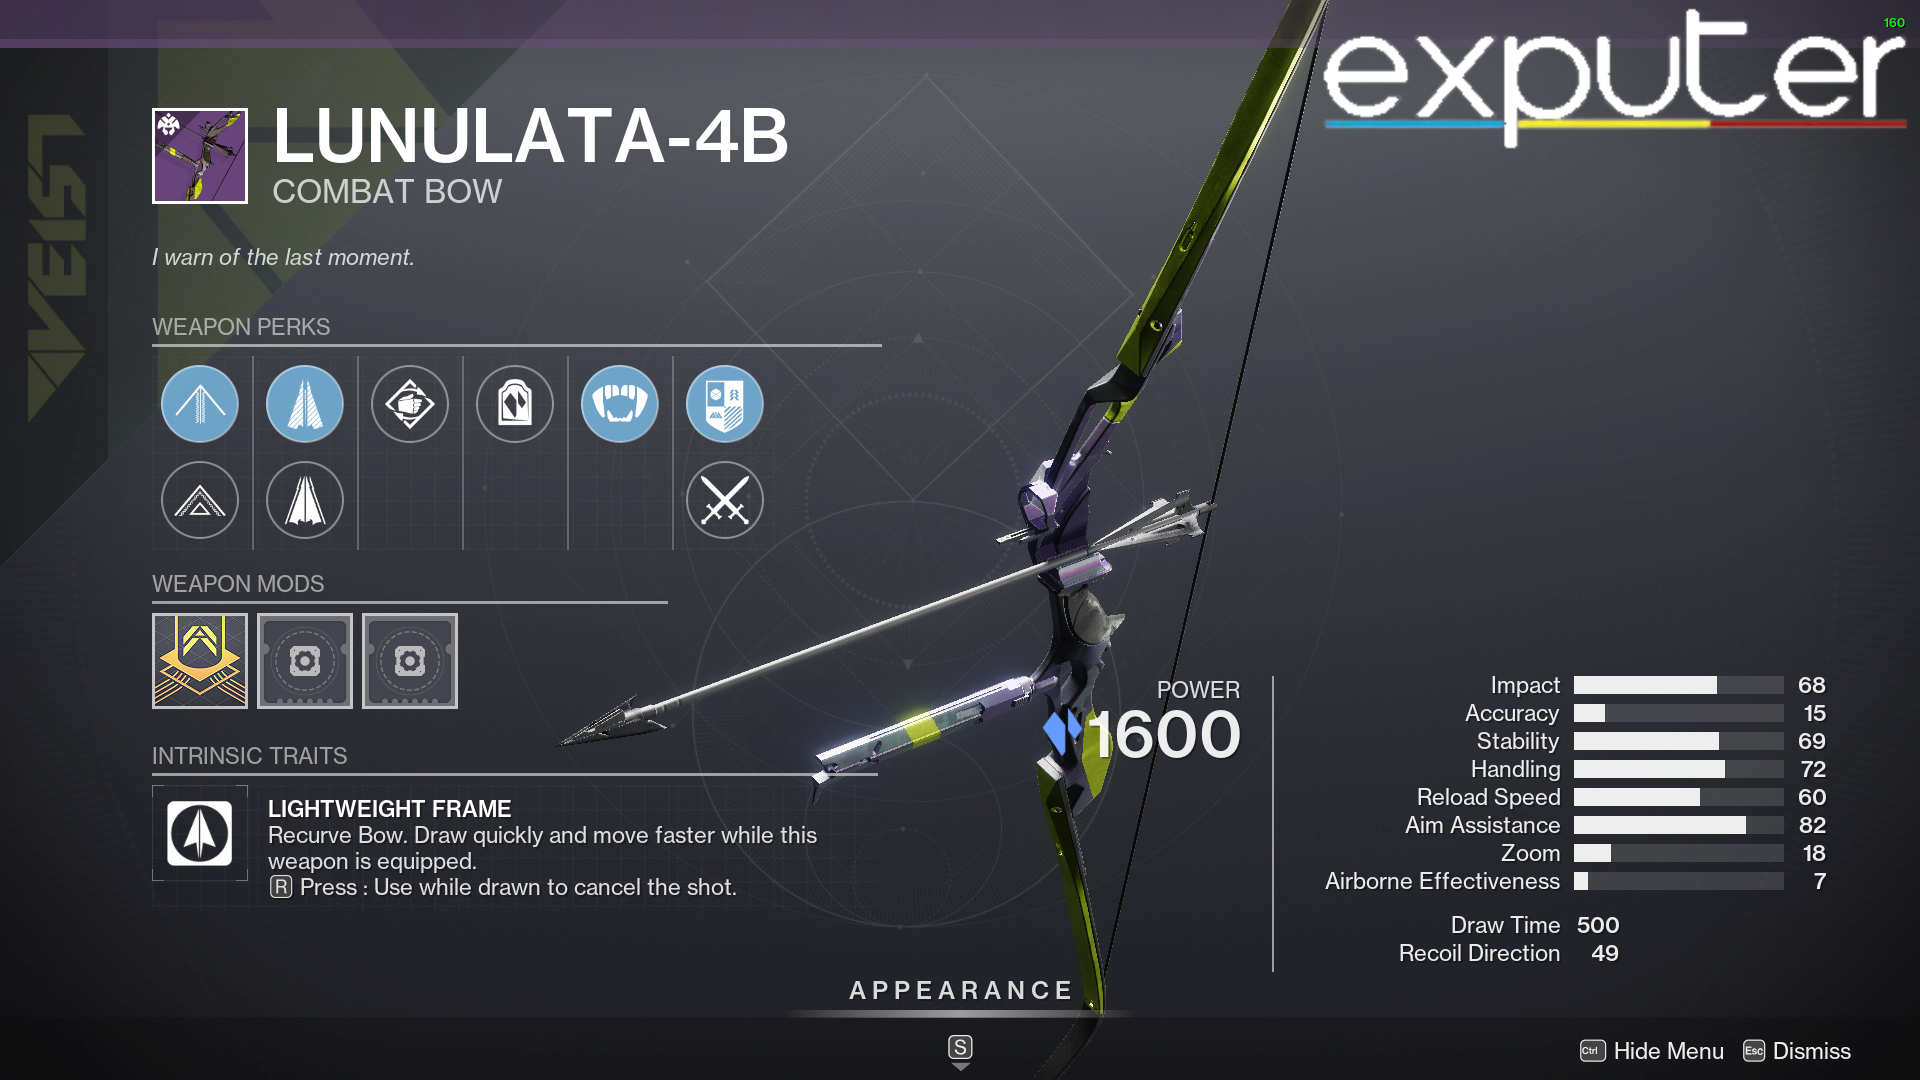 Lunalata-4B Bow with stasis energy